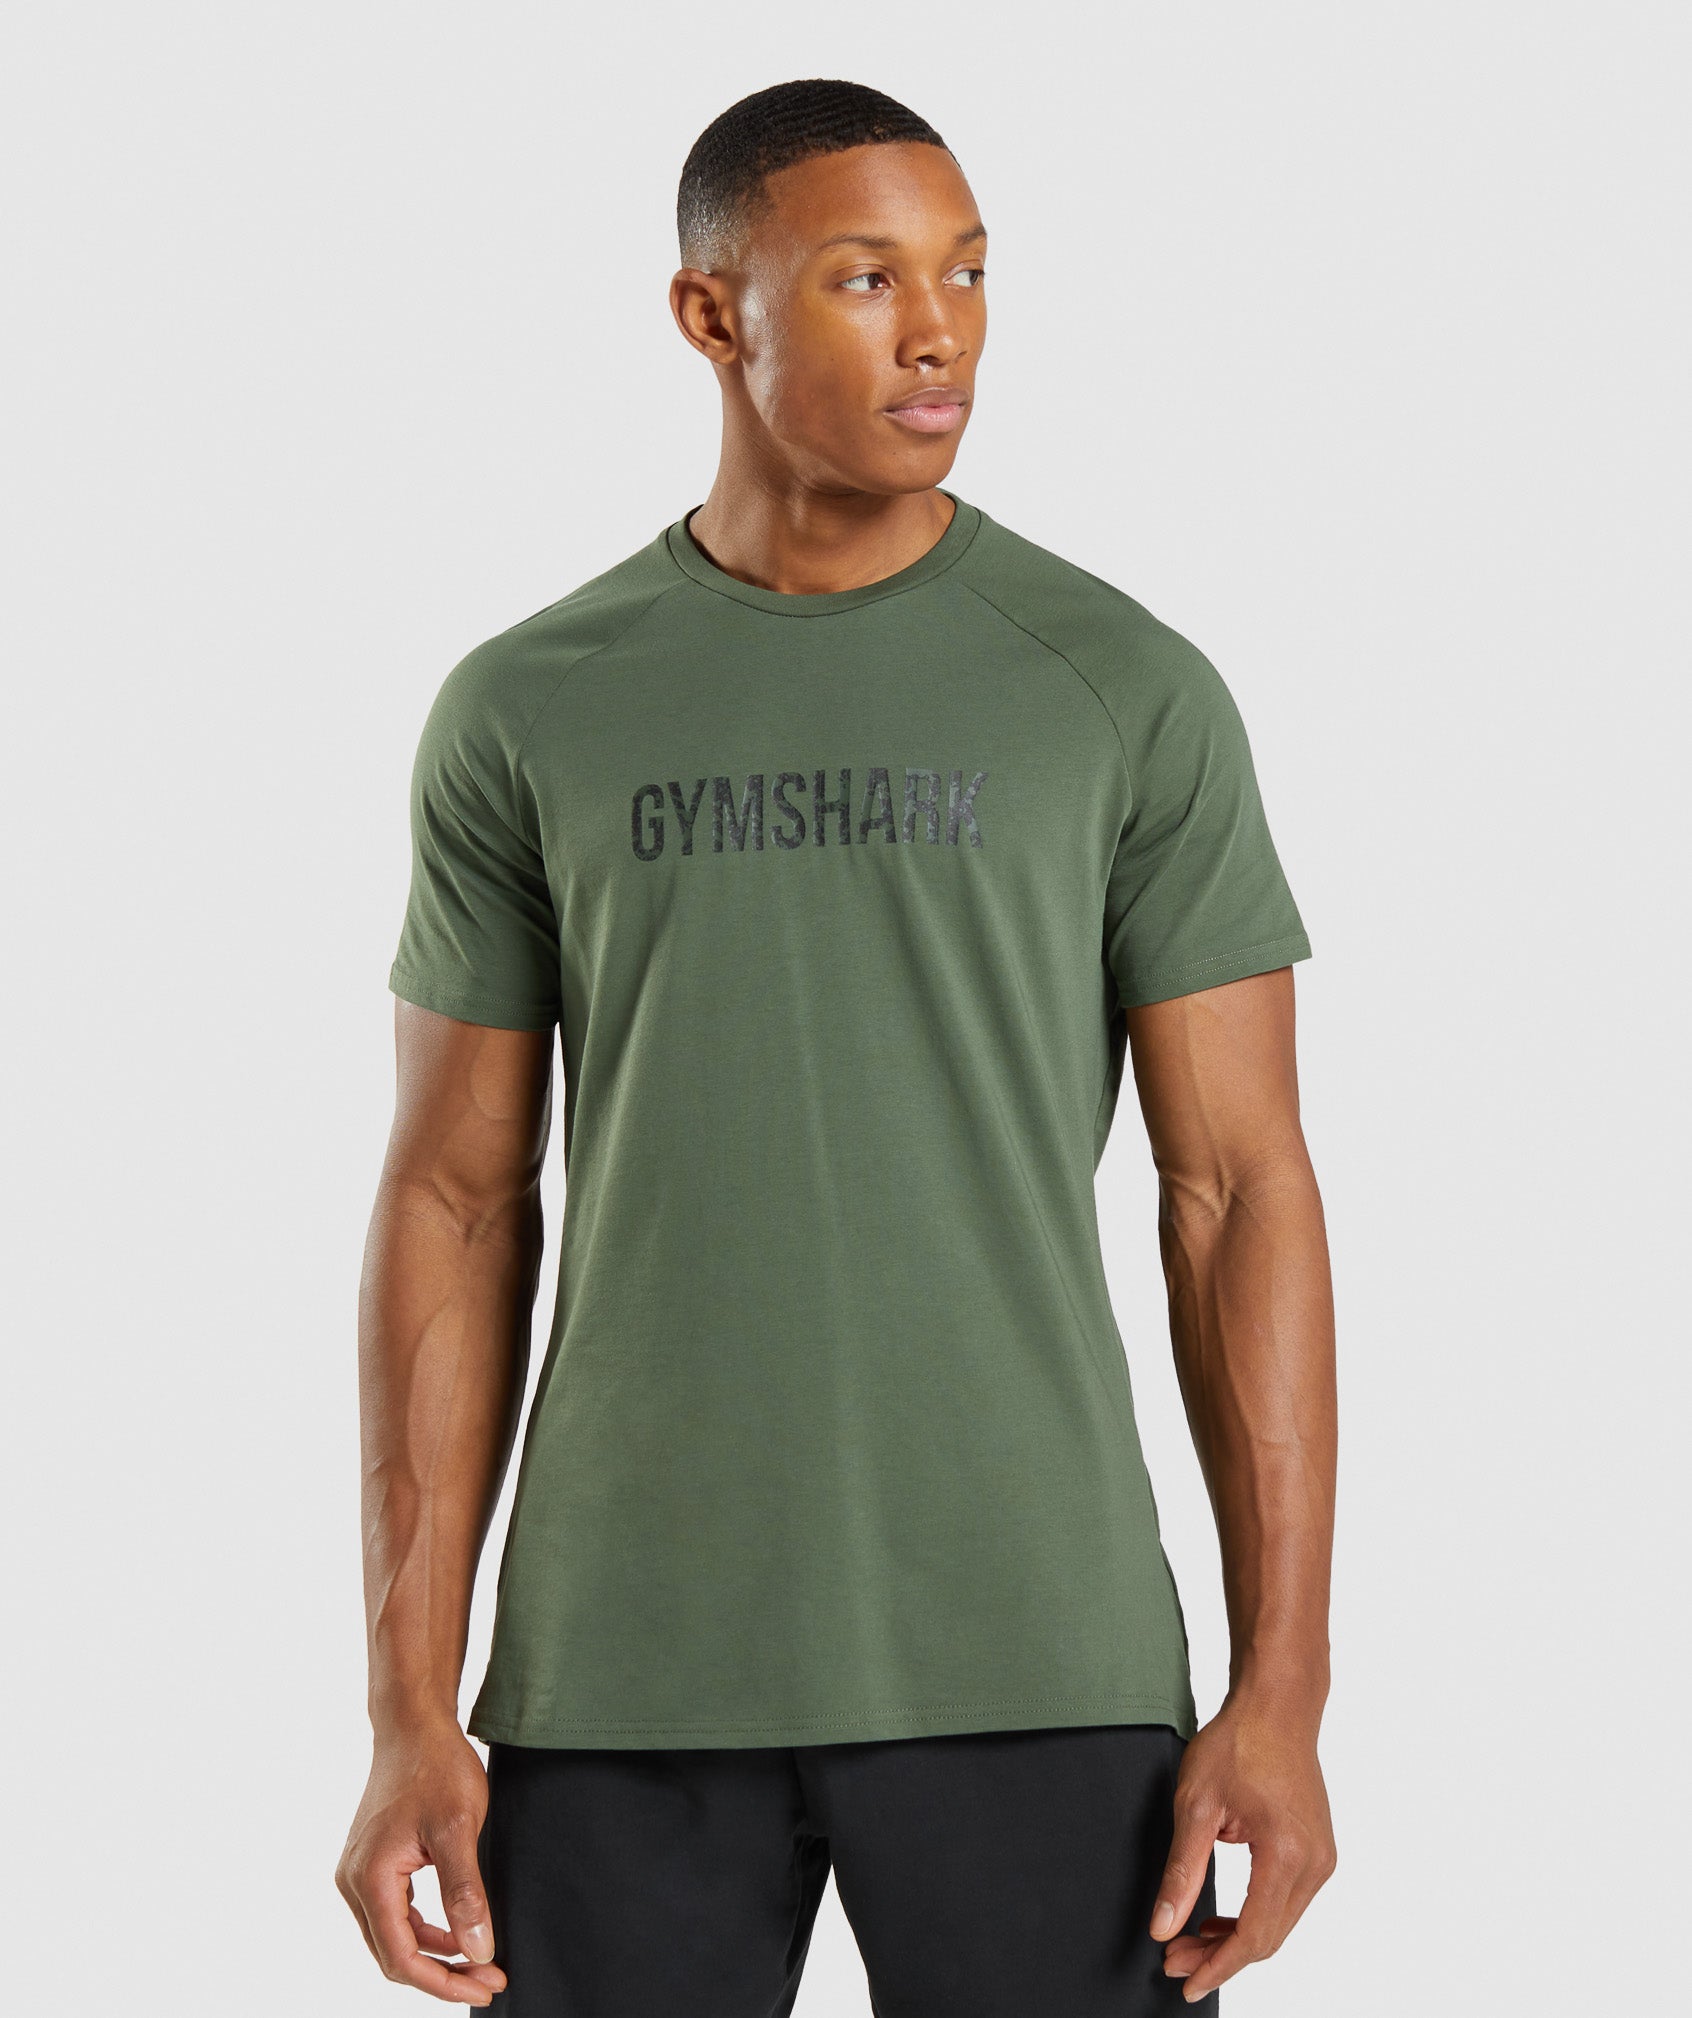 Gymshark Apollo Camo T-Shirt - Camo Green